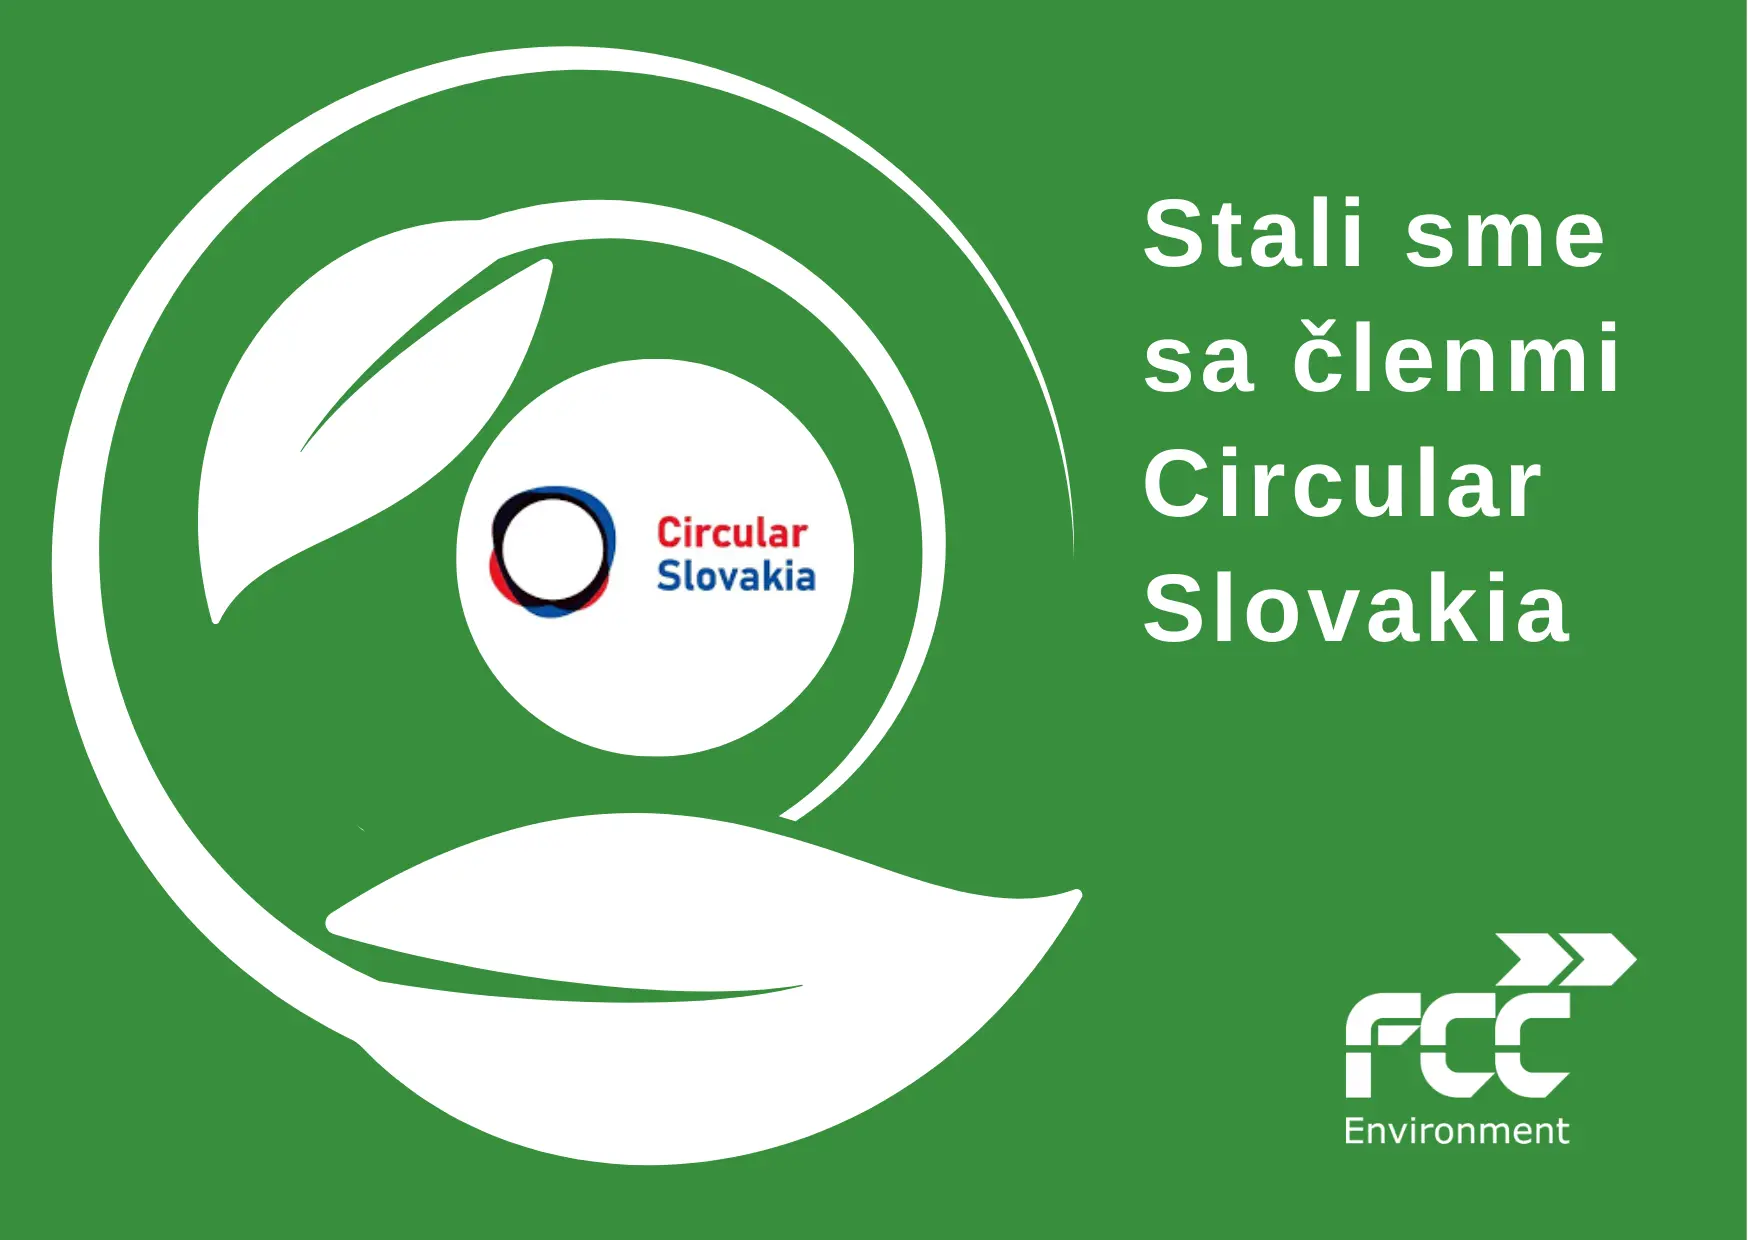 Stali sme sa členmi Circular Slovakia